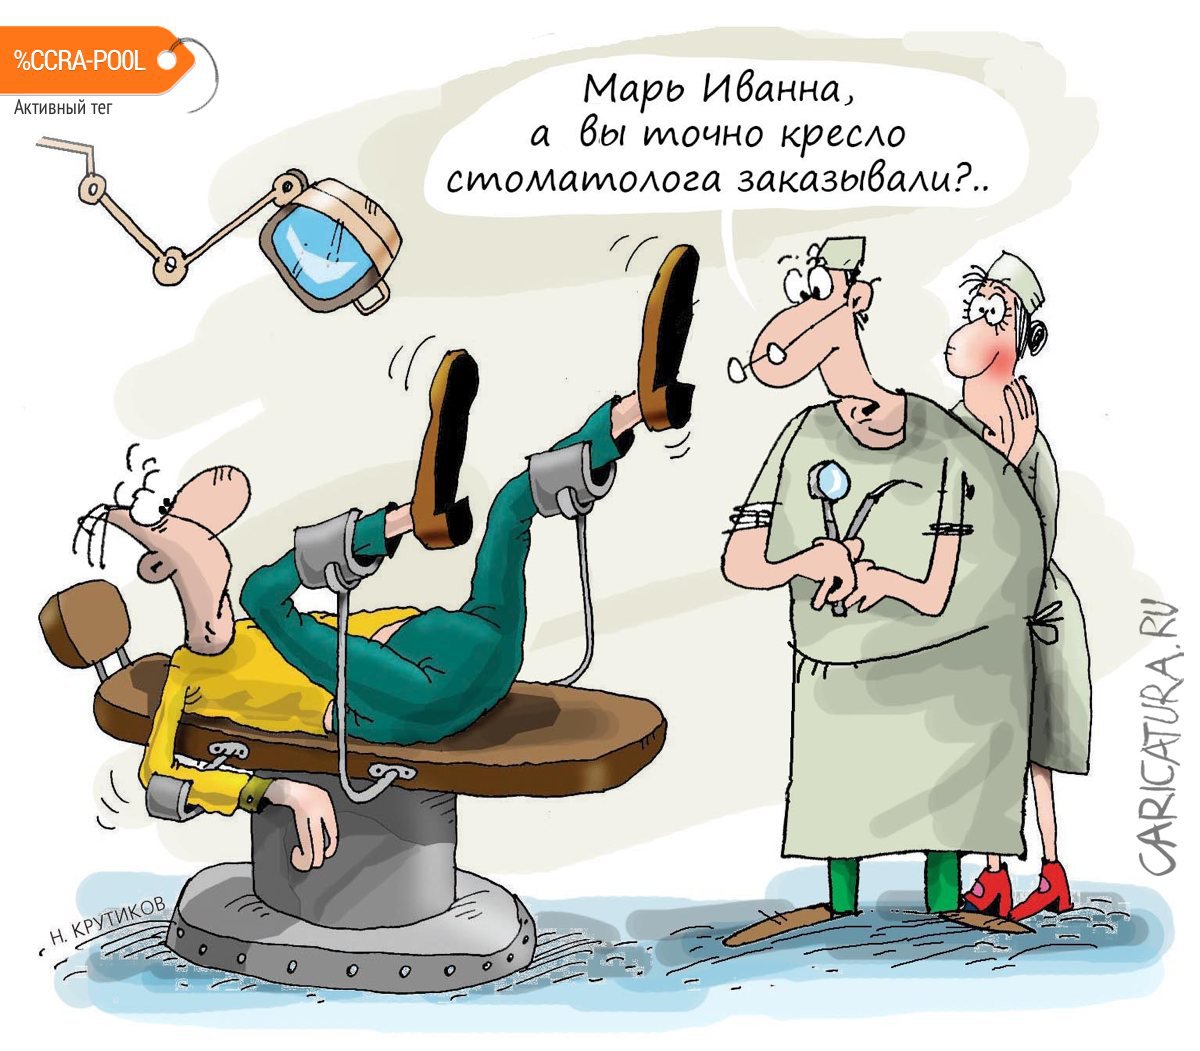 Карикатура "Кресло стоматолога или перепутали", Николай Крутиков